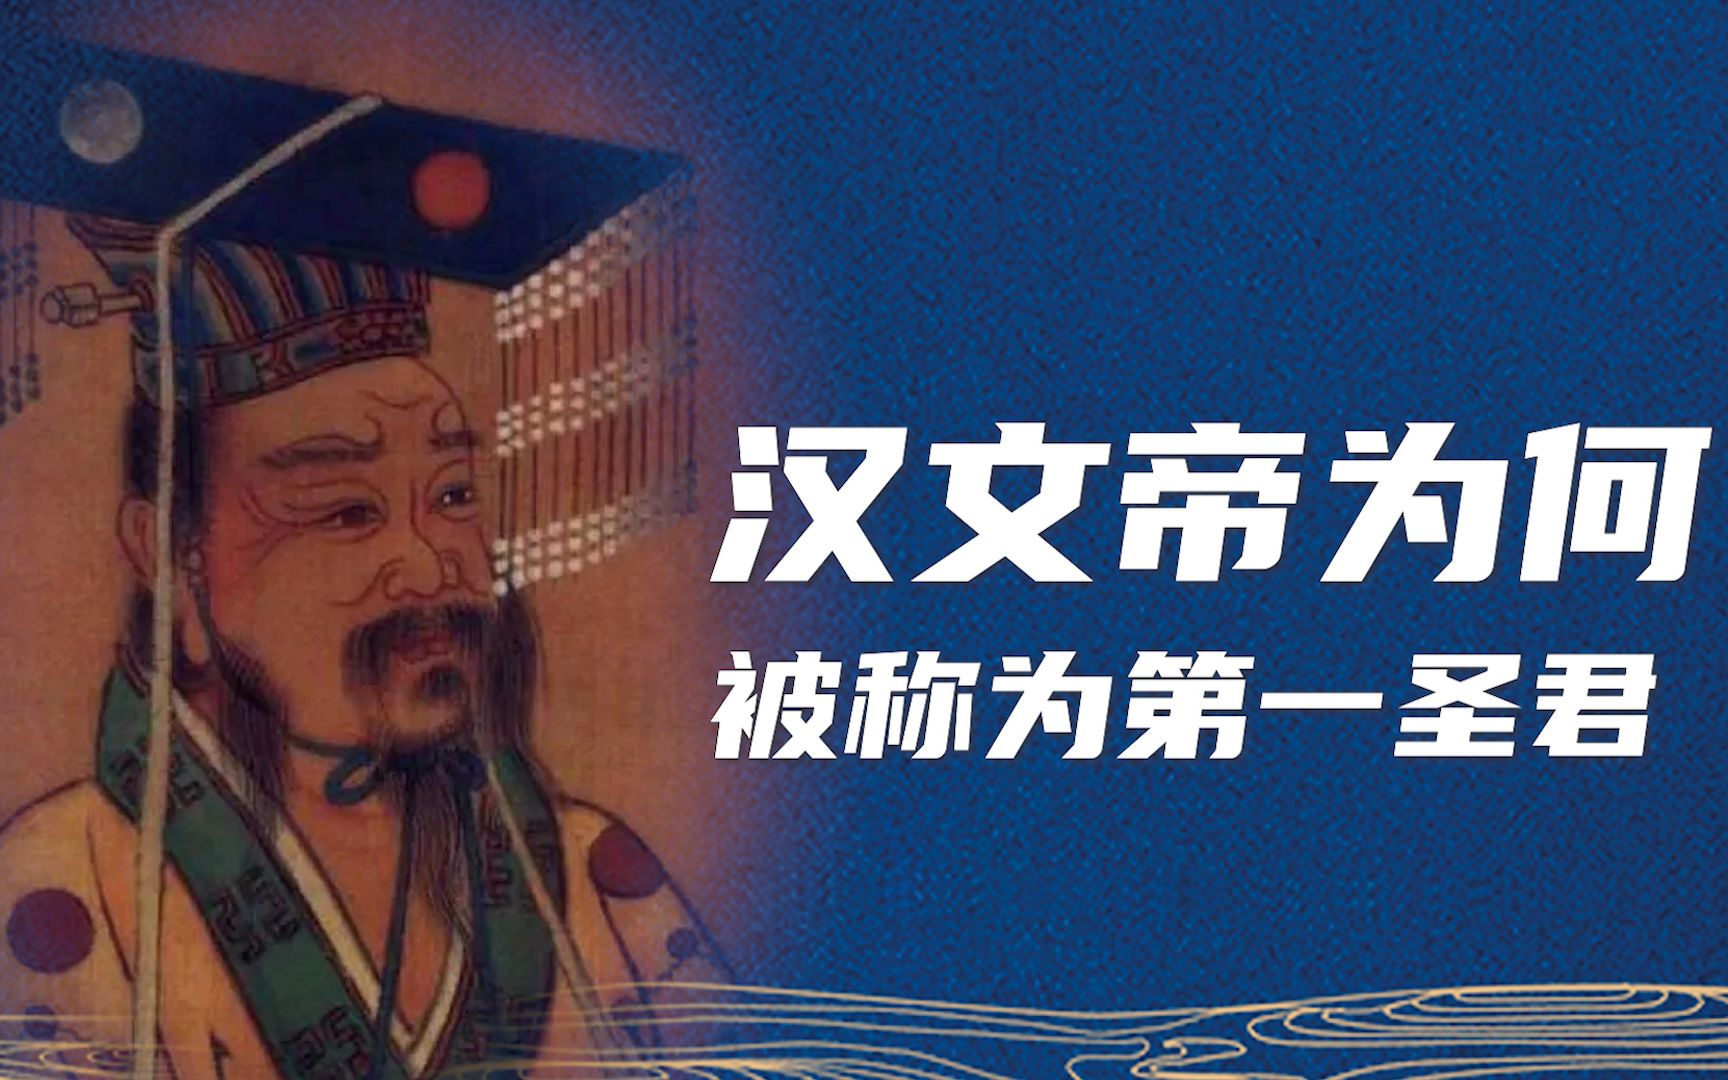 被称为第一圣君的汉文帝是一个什么样的人？在 汉文帝霸陵里我们能发现什么？